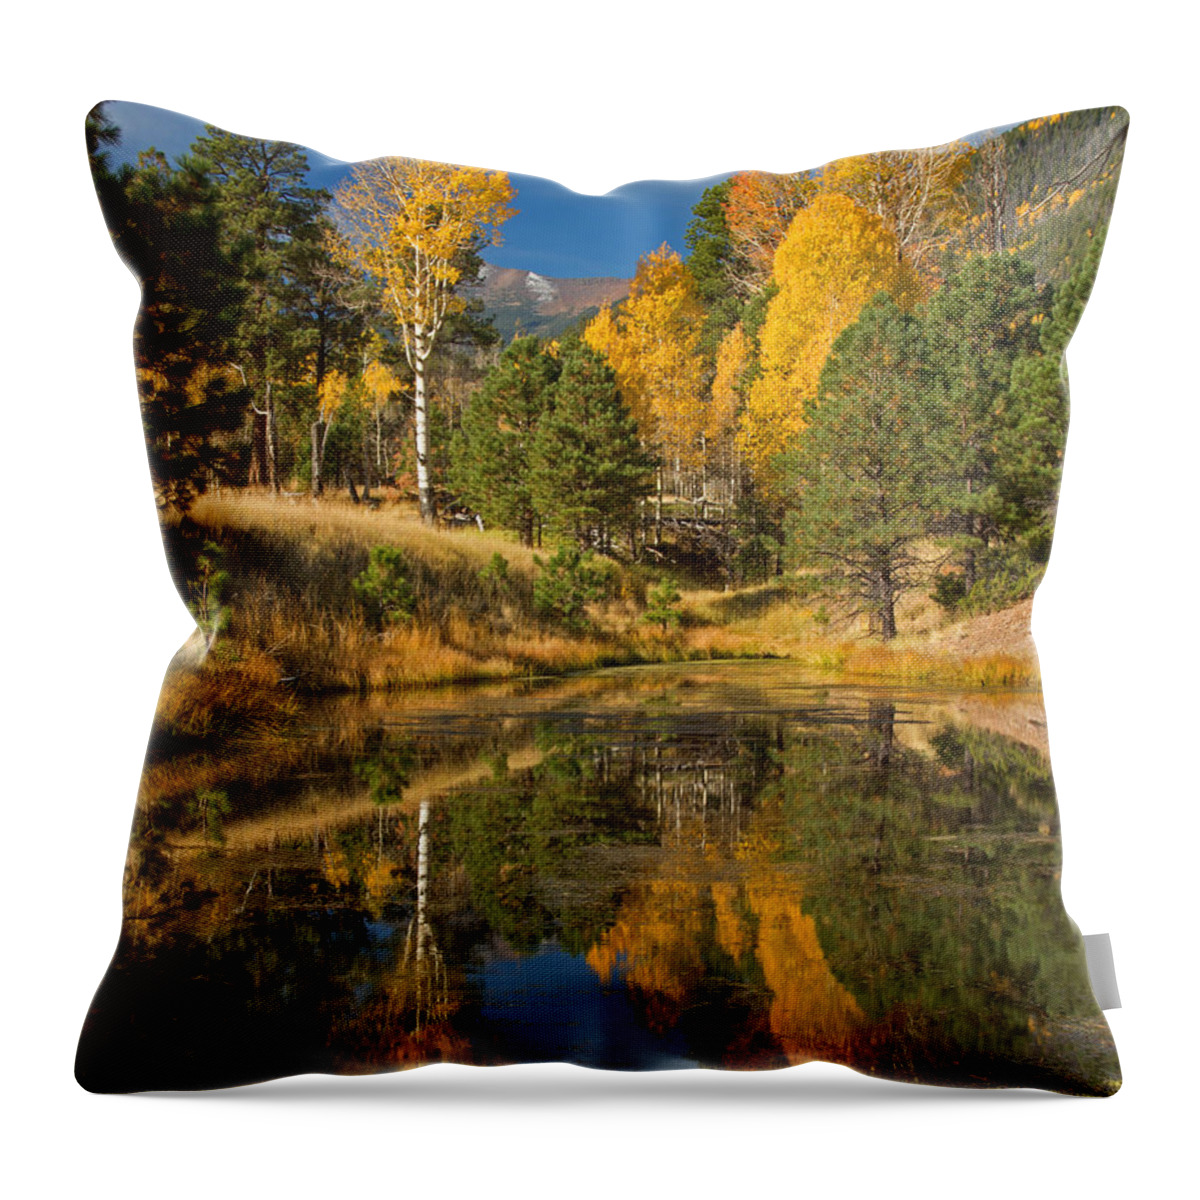 Fall Aspen Throw Pillow featuring the photograph Aspen Gold Reflection by Susan Westervelt